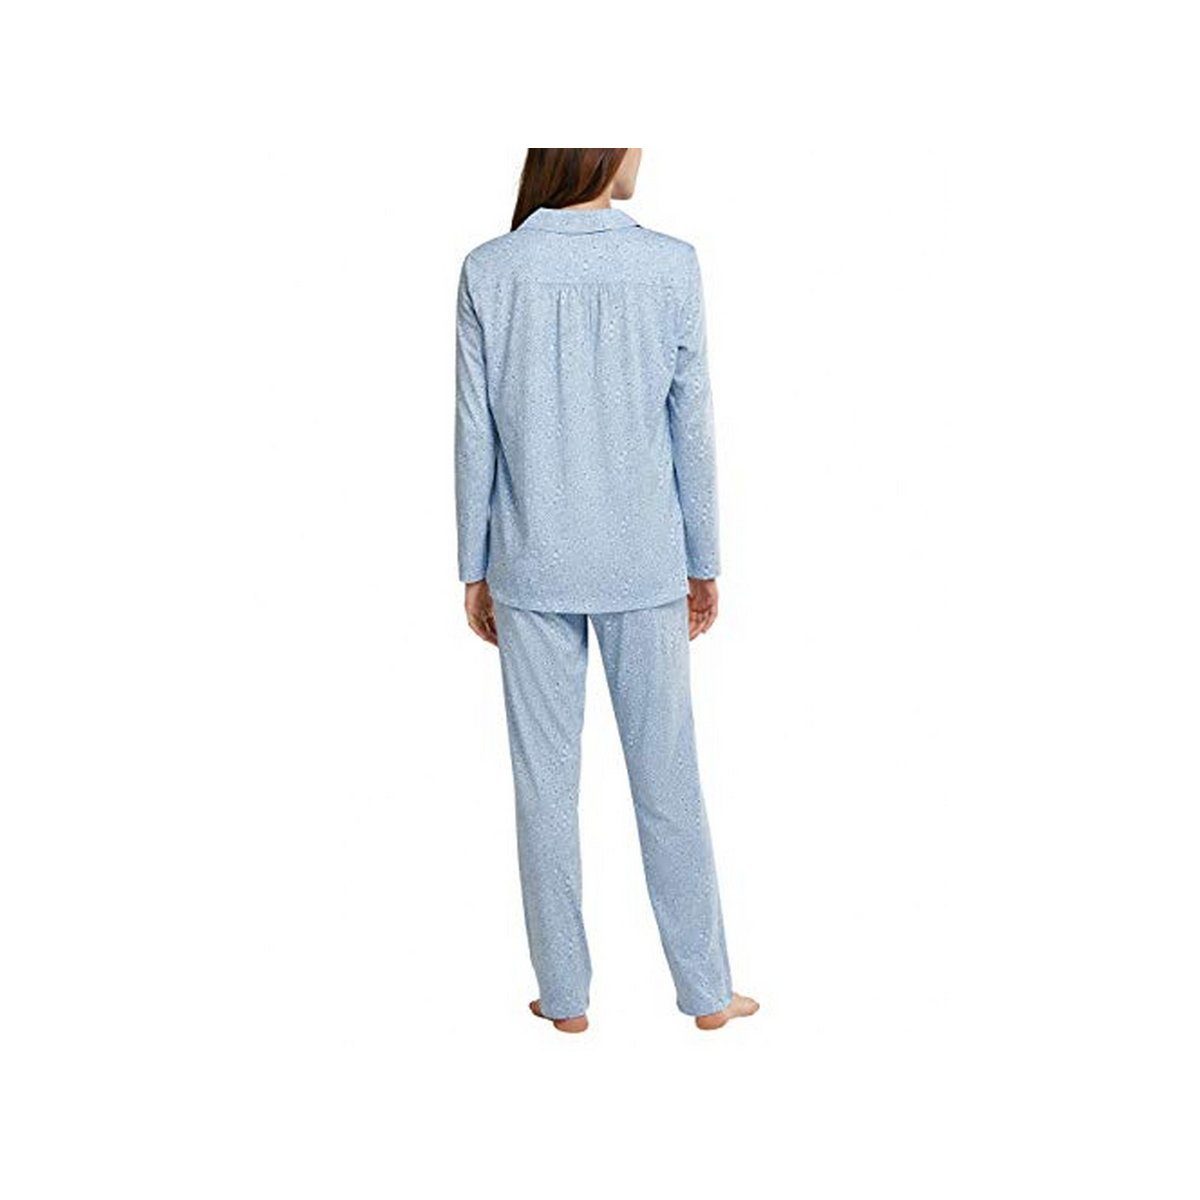 hell-blau Schlafanzug Schiesser